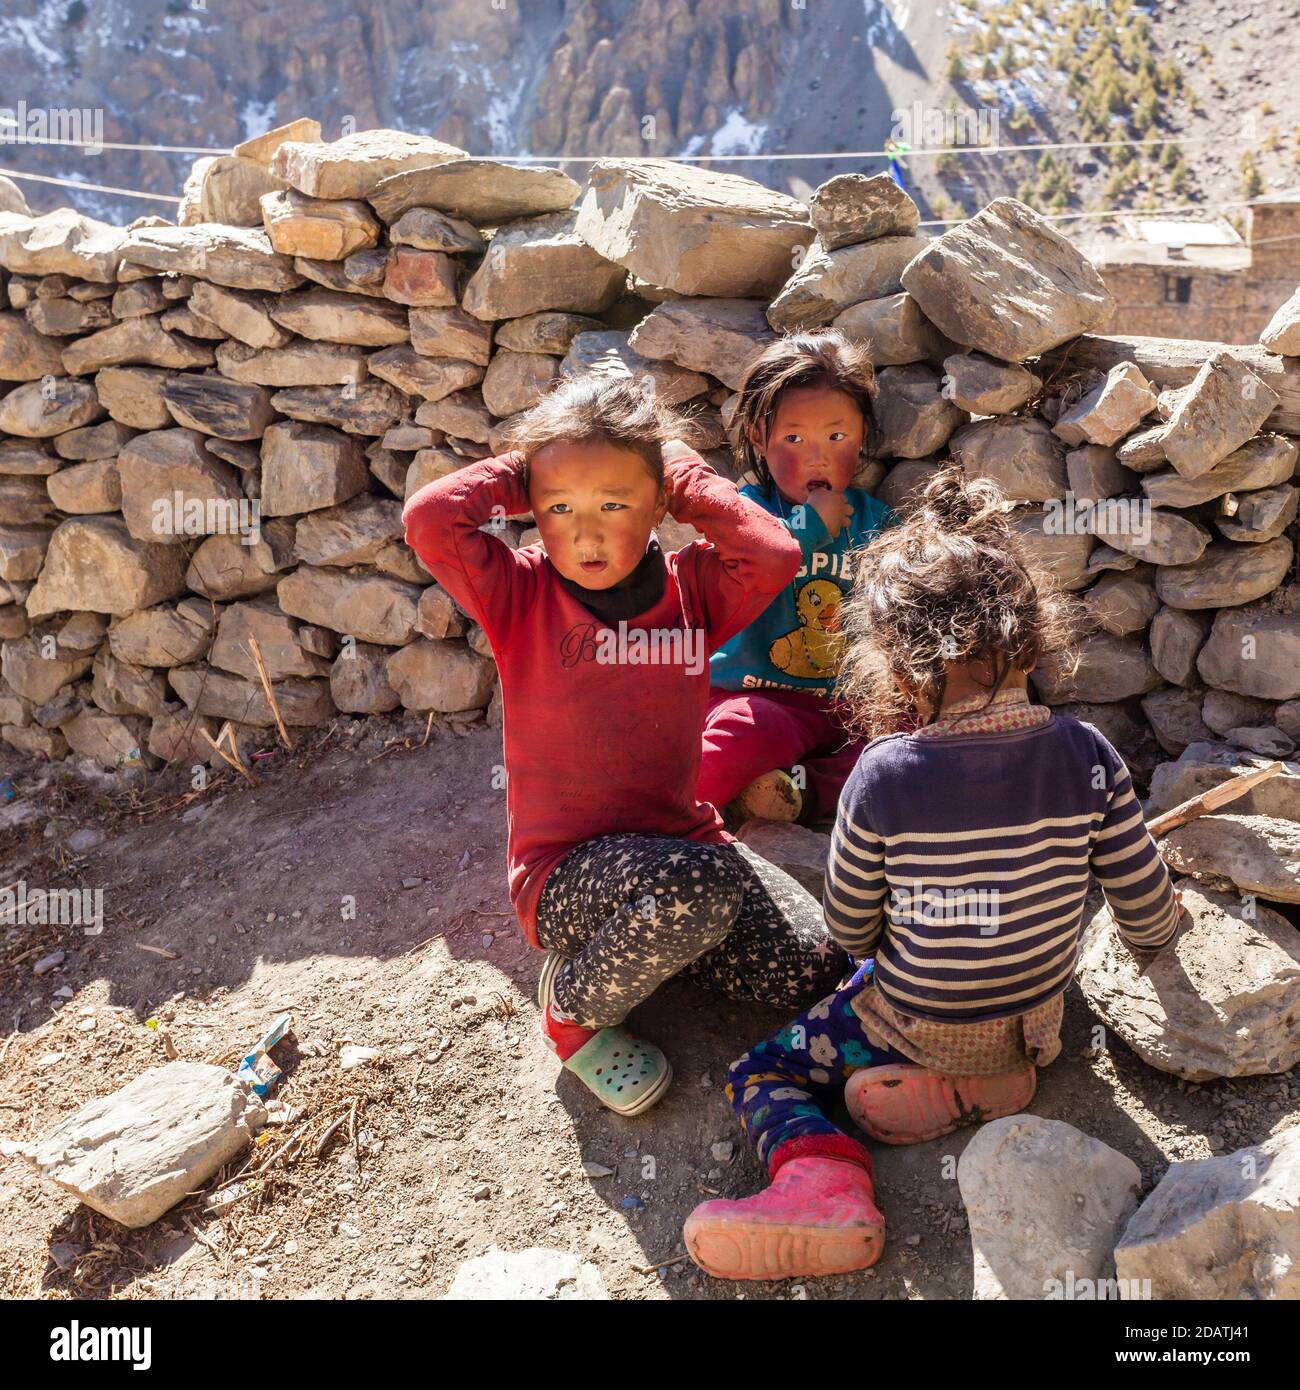 Manang, Nepal - 11 novembre 2015: Tre bambini nepalesi che giocano sulla strada del villaggio Foto Stock